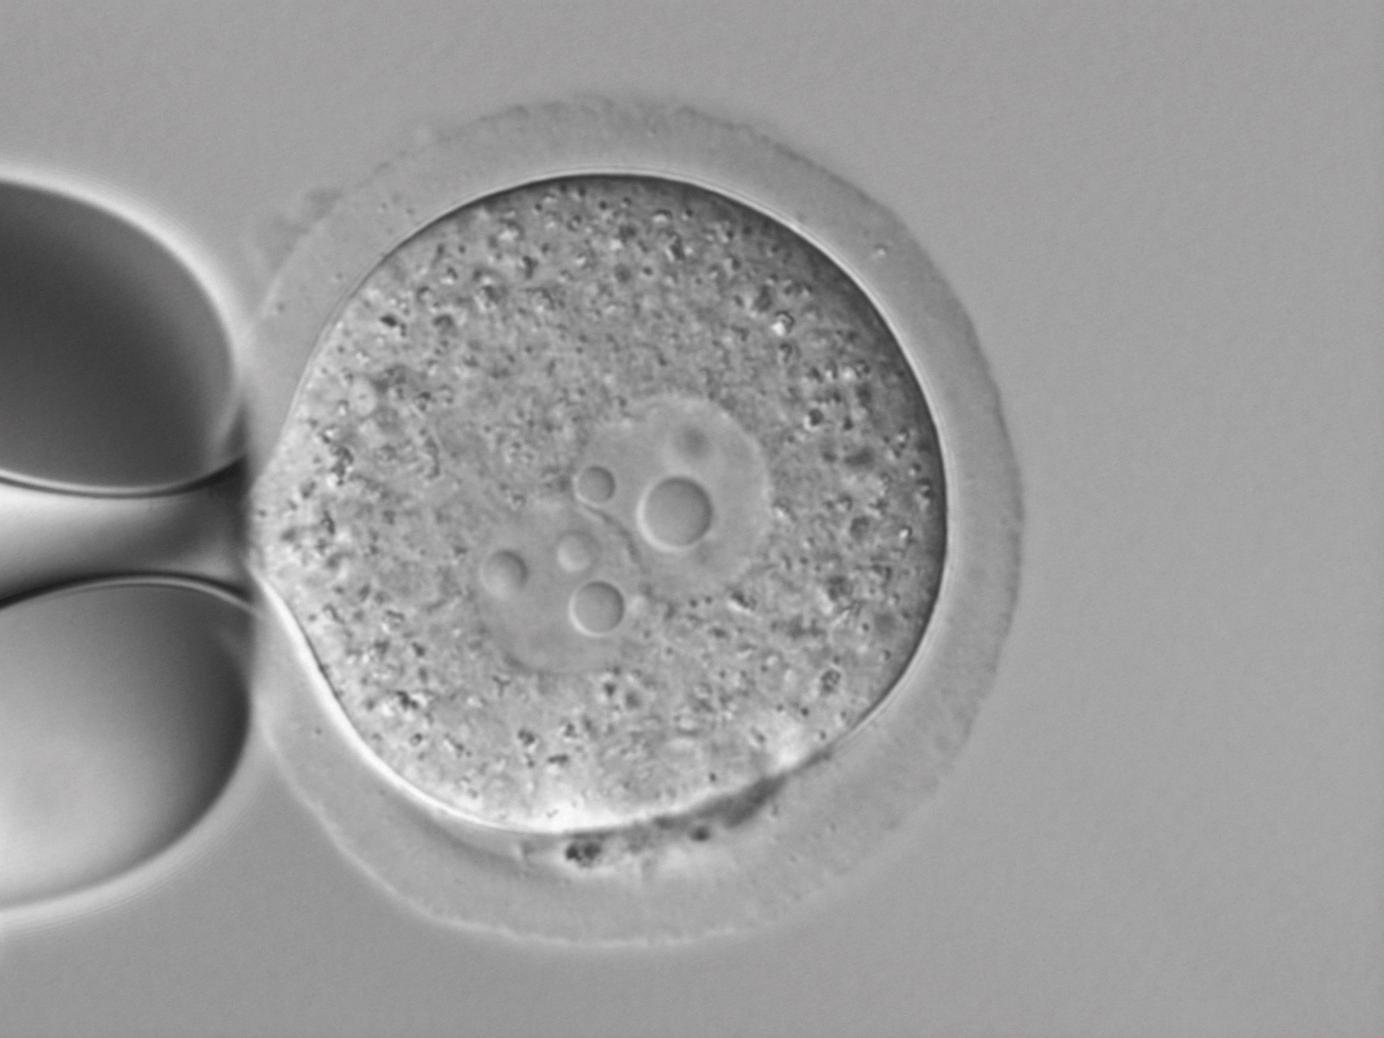 Transgenic mouse embryos in DIC, courtesy of Dr. L.-M. Criado Rodríguez, Transgenesis Department, Fundación Centro Nacional de Investigaciones Cardiovasculares Carlos III, Madrid, Spain